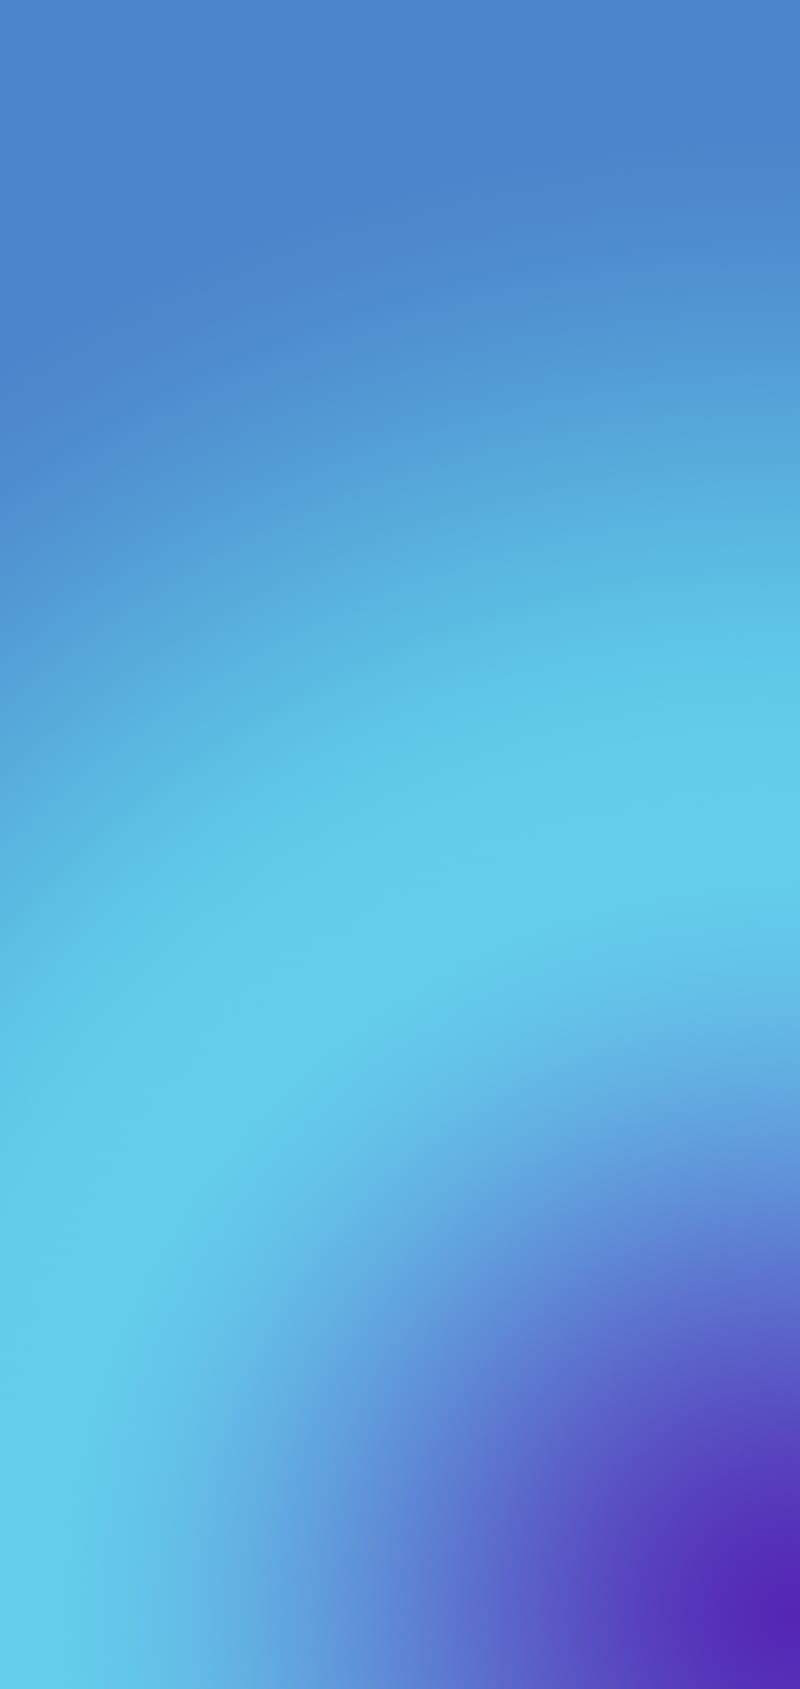 Đối với những người yêu thích màu xanh, HD miui blue wallpapers - blue miui chính là điểm đến thích hợp nhất để bạn tìm kiếm hình nền. Với độ phân giải cao và tông màu xanh Miui tươi sáng, hình nền sẽ làm cho điện thoại của bạn trở nên cuốn hút hơn.